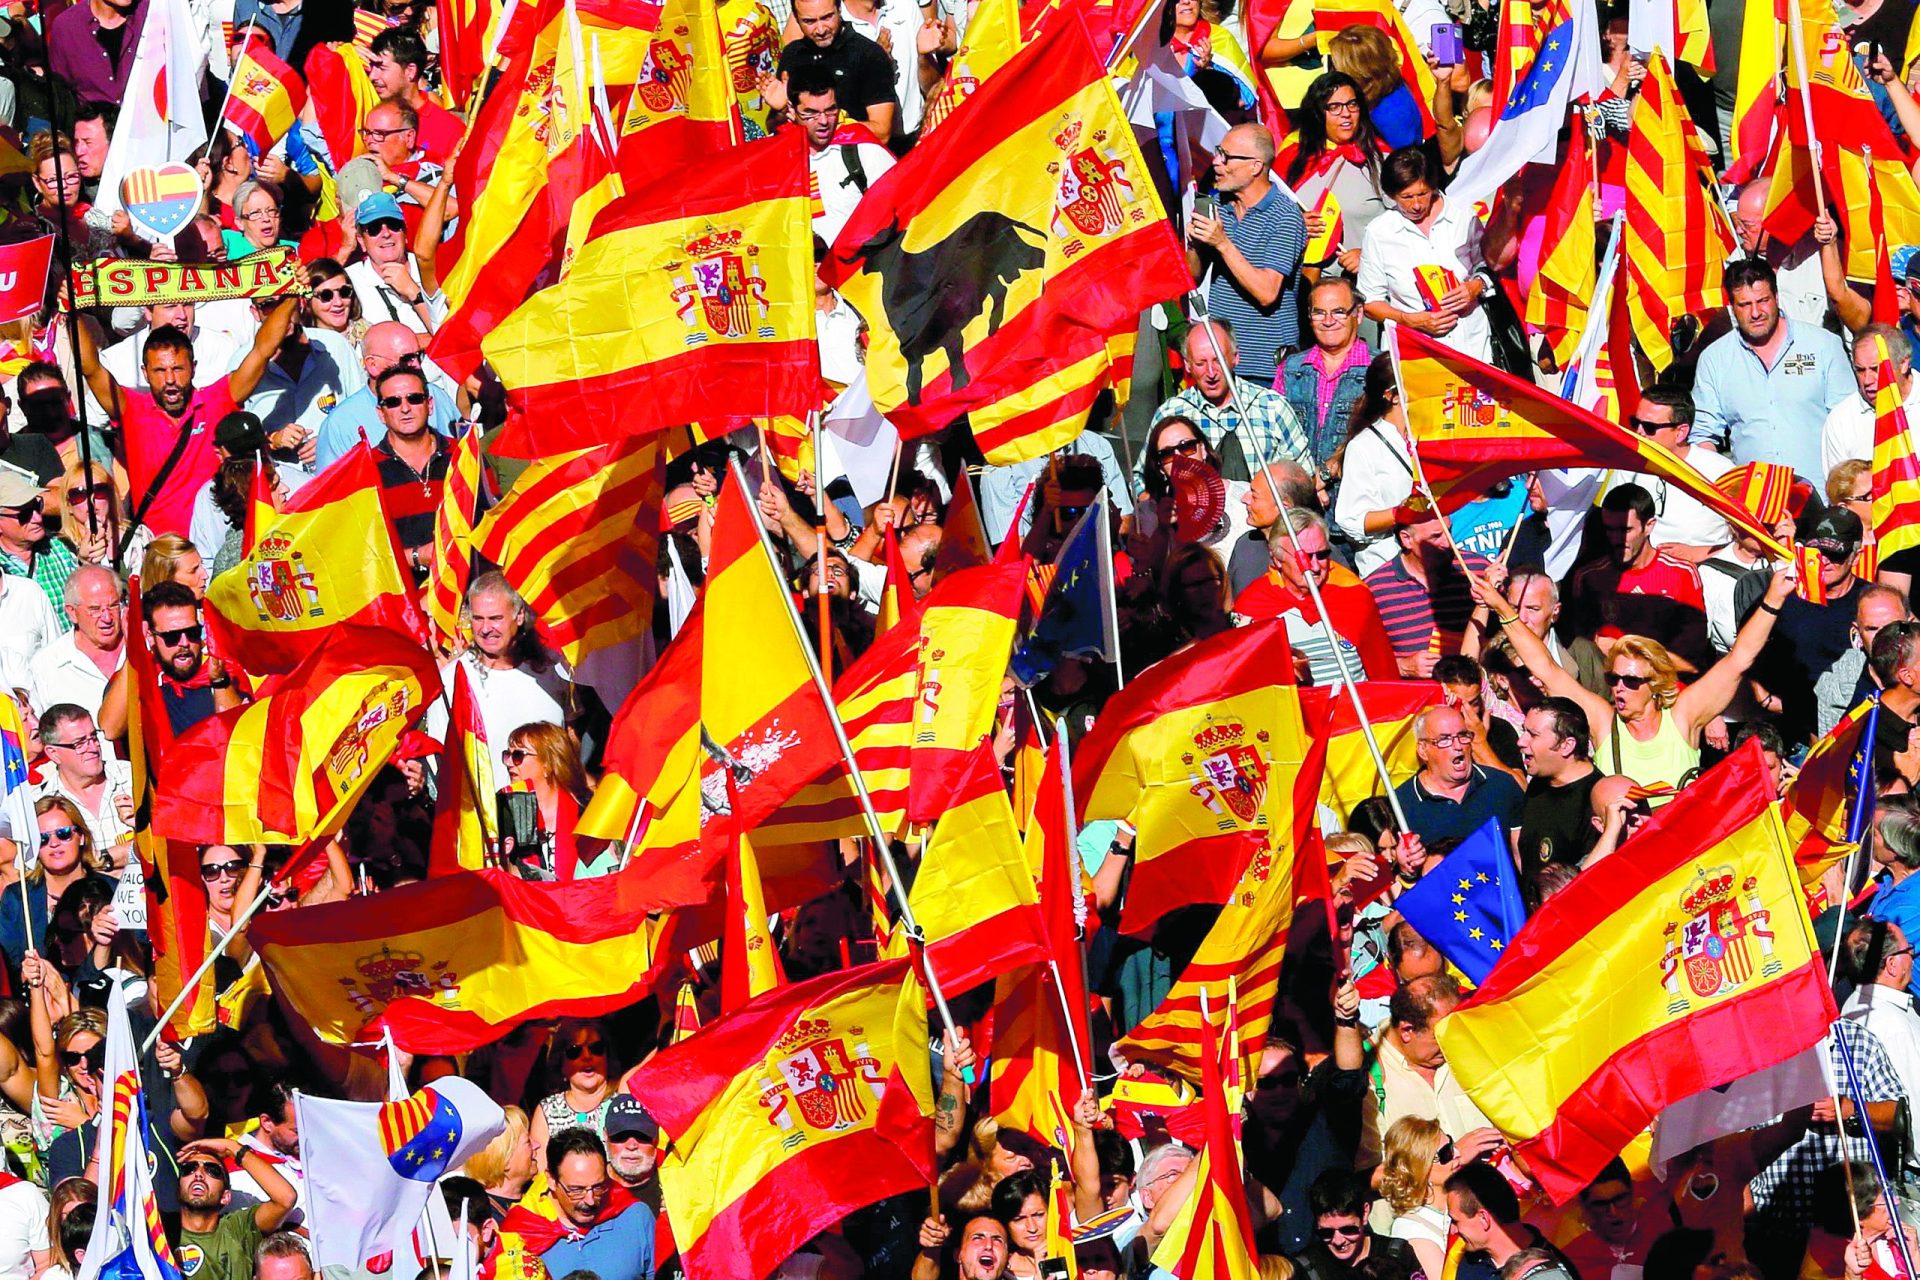 Catalunha. Espanholistas invadem as ruas de Barcelona